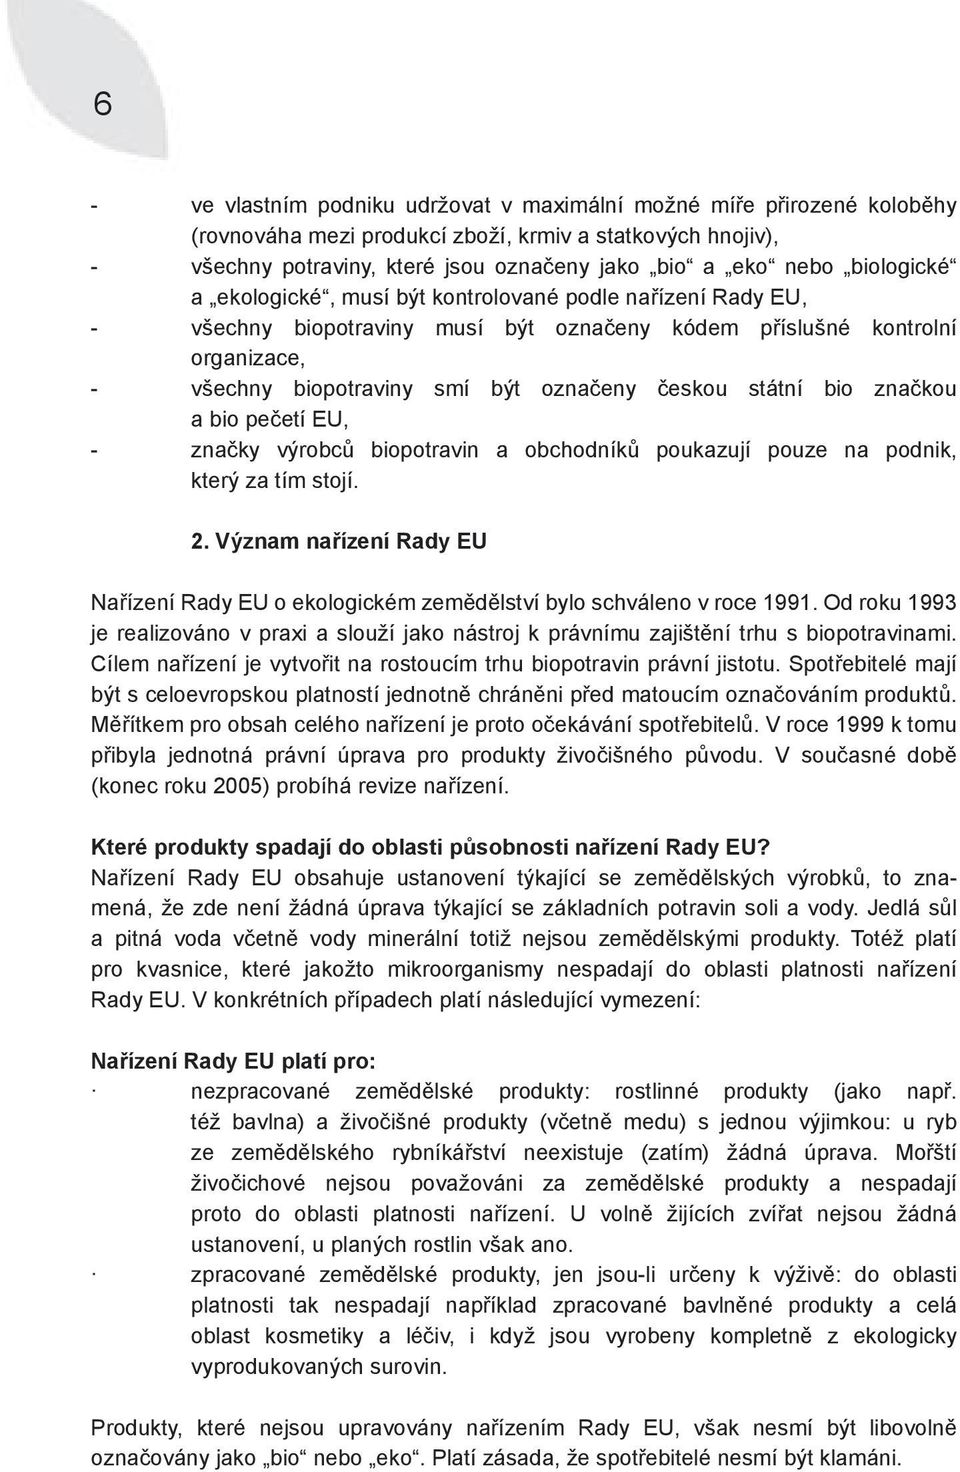 státní bio značkou a bio pečetí EU, - značky výrobců biopotravin a obchodníků poukazují pouze na podnik, který za tím stojí. 2.